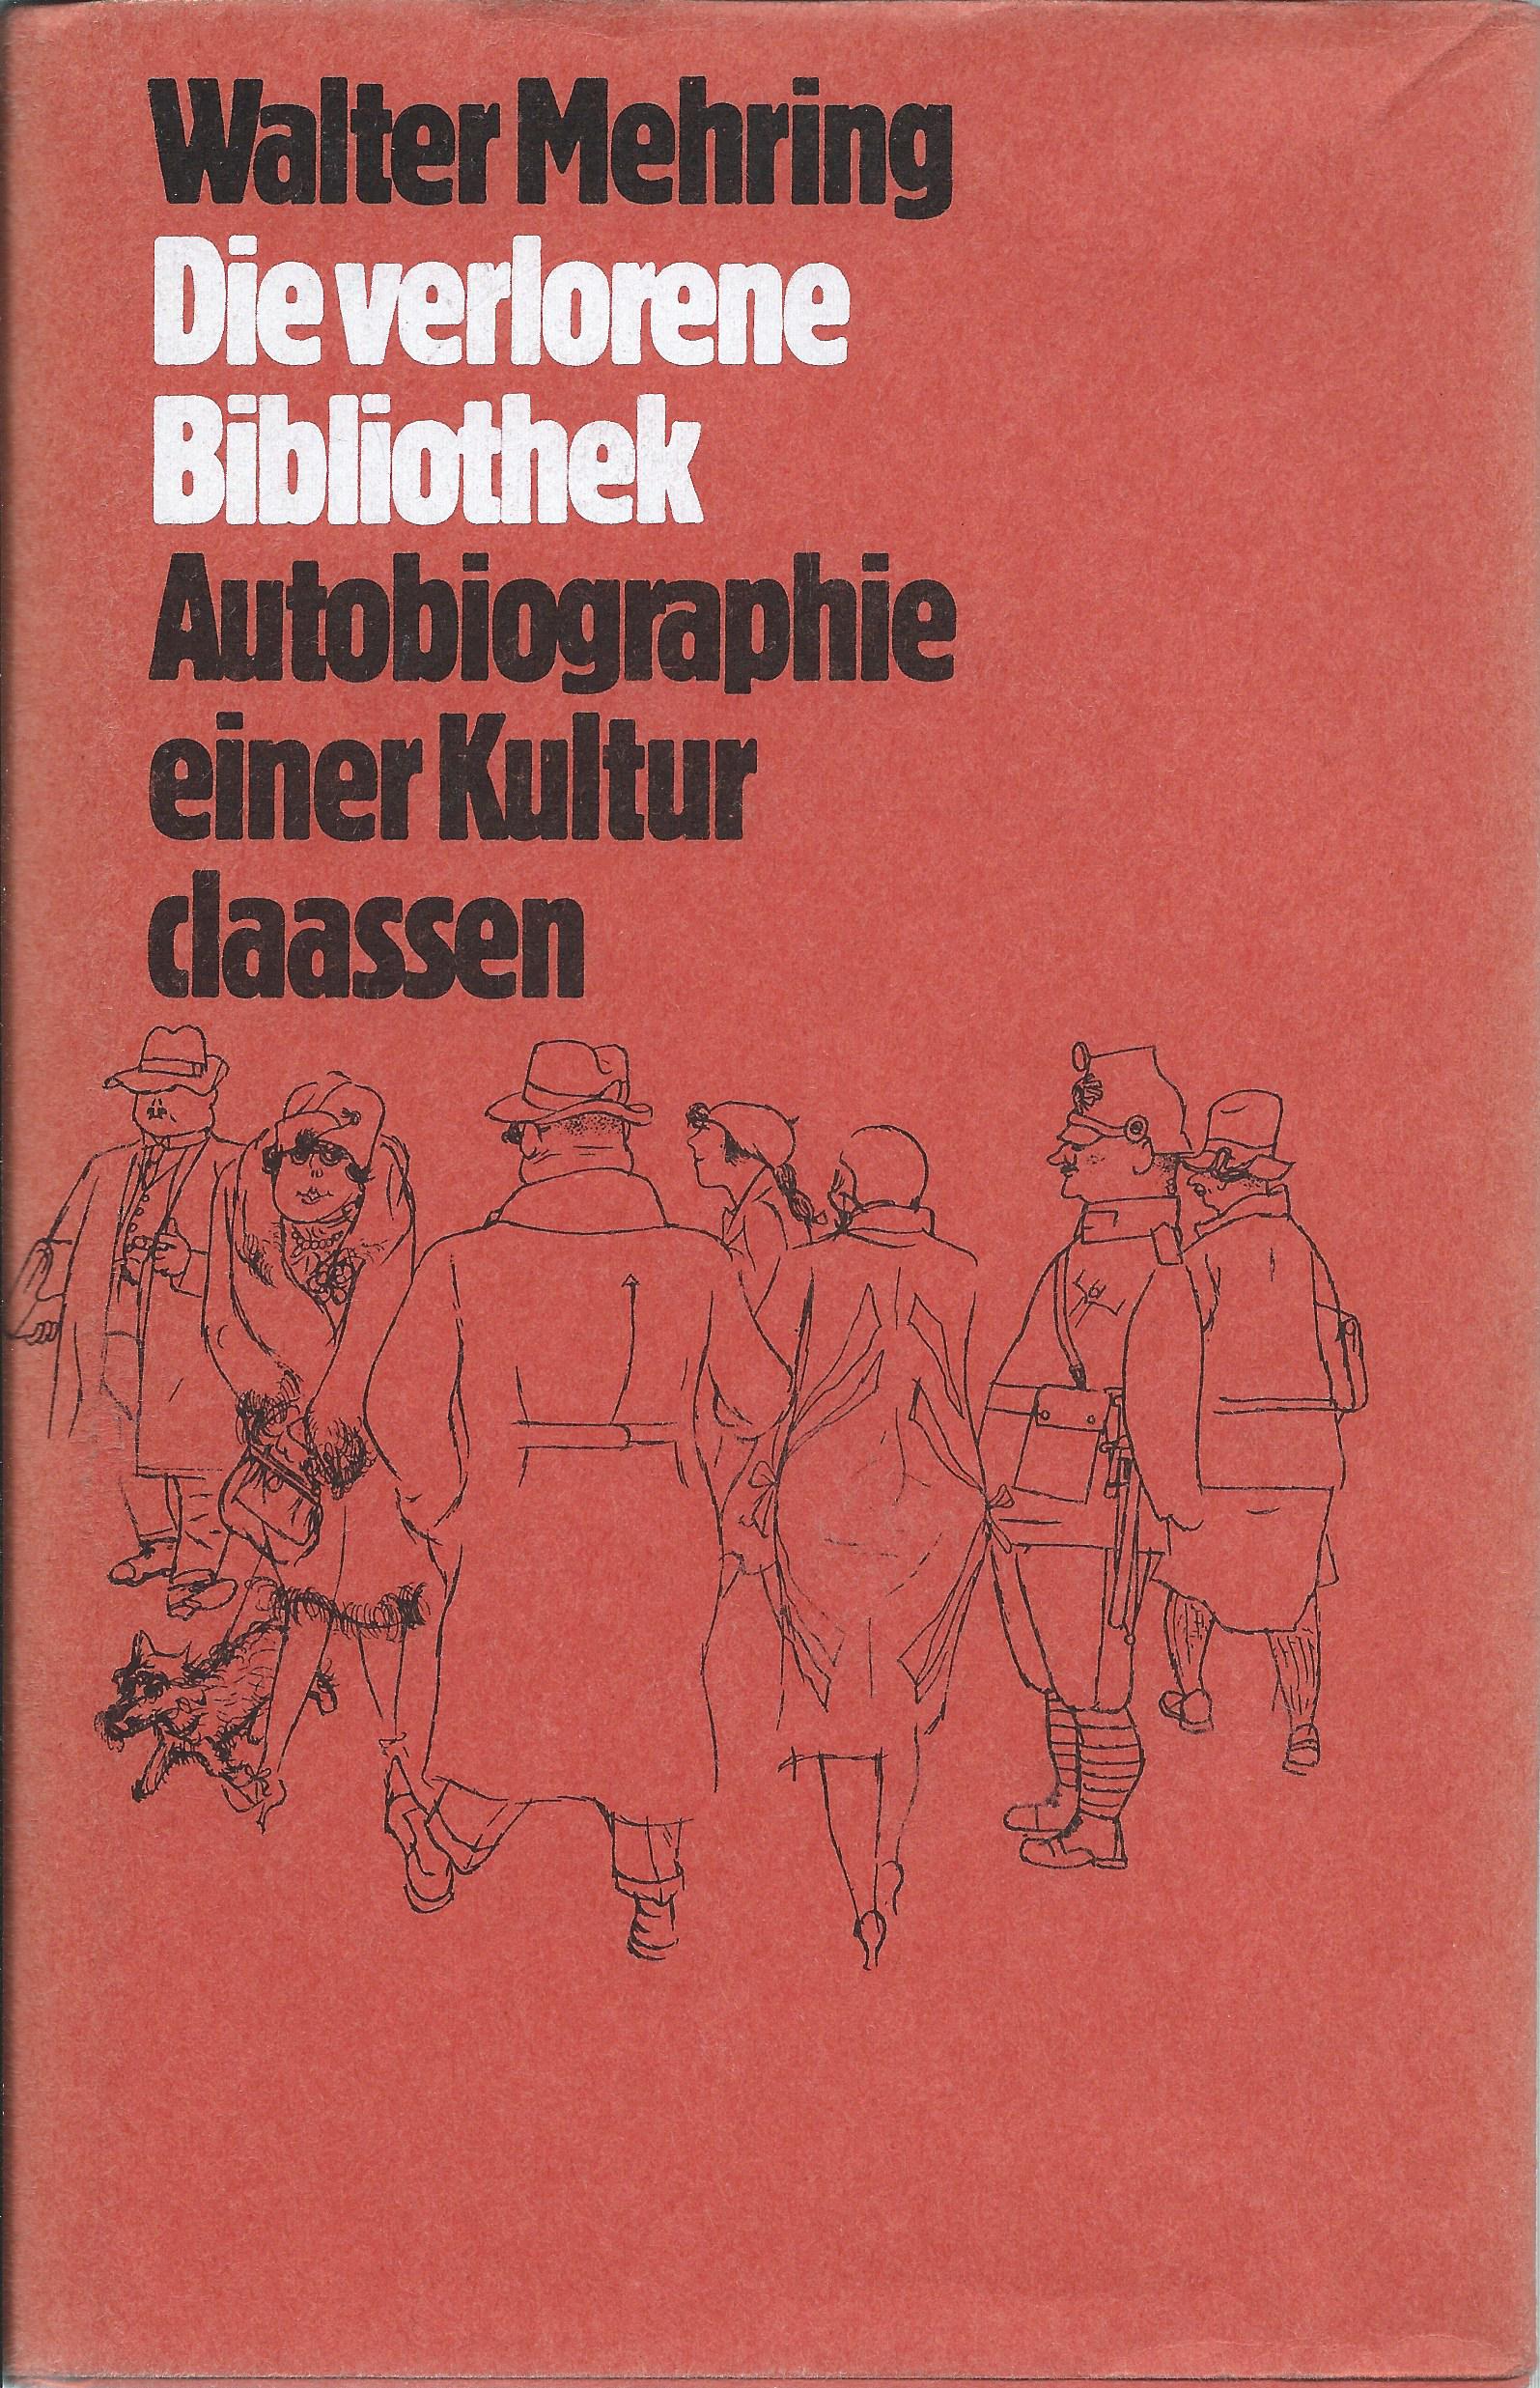 Die verlorene Bibliothek, Autobiografie einer Kultur (1978)